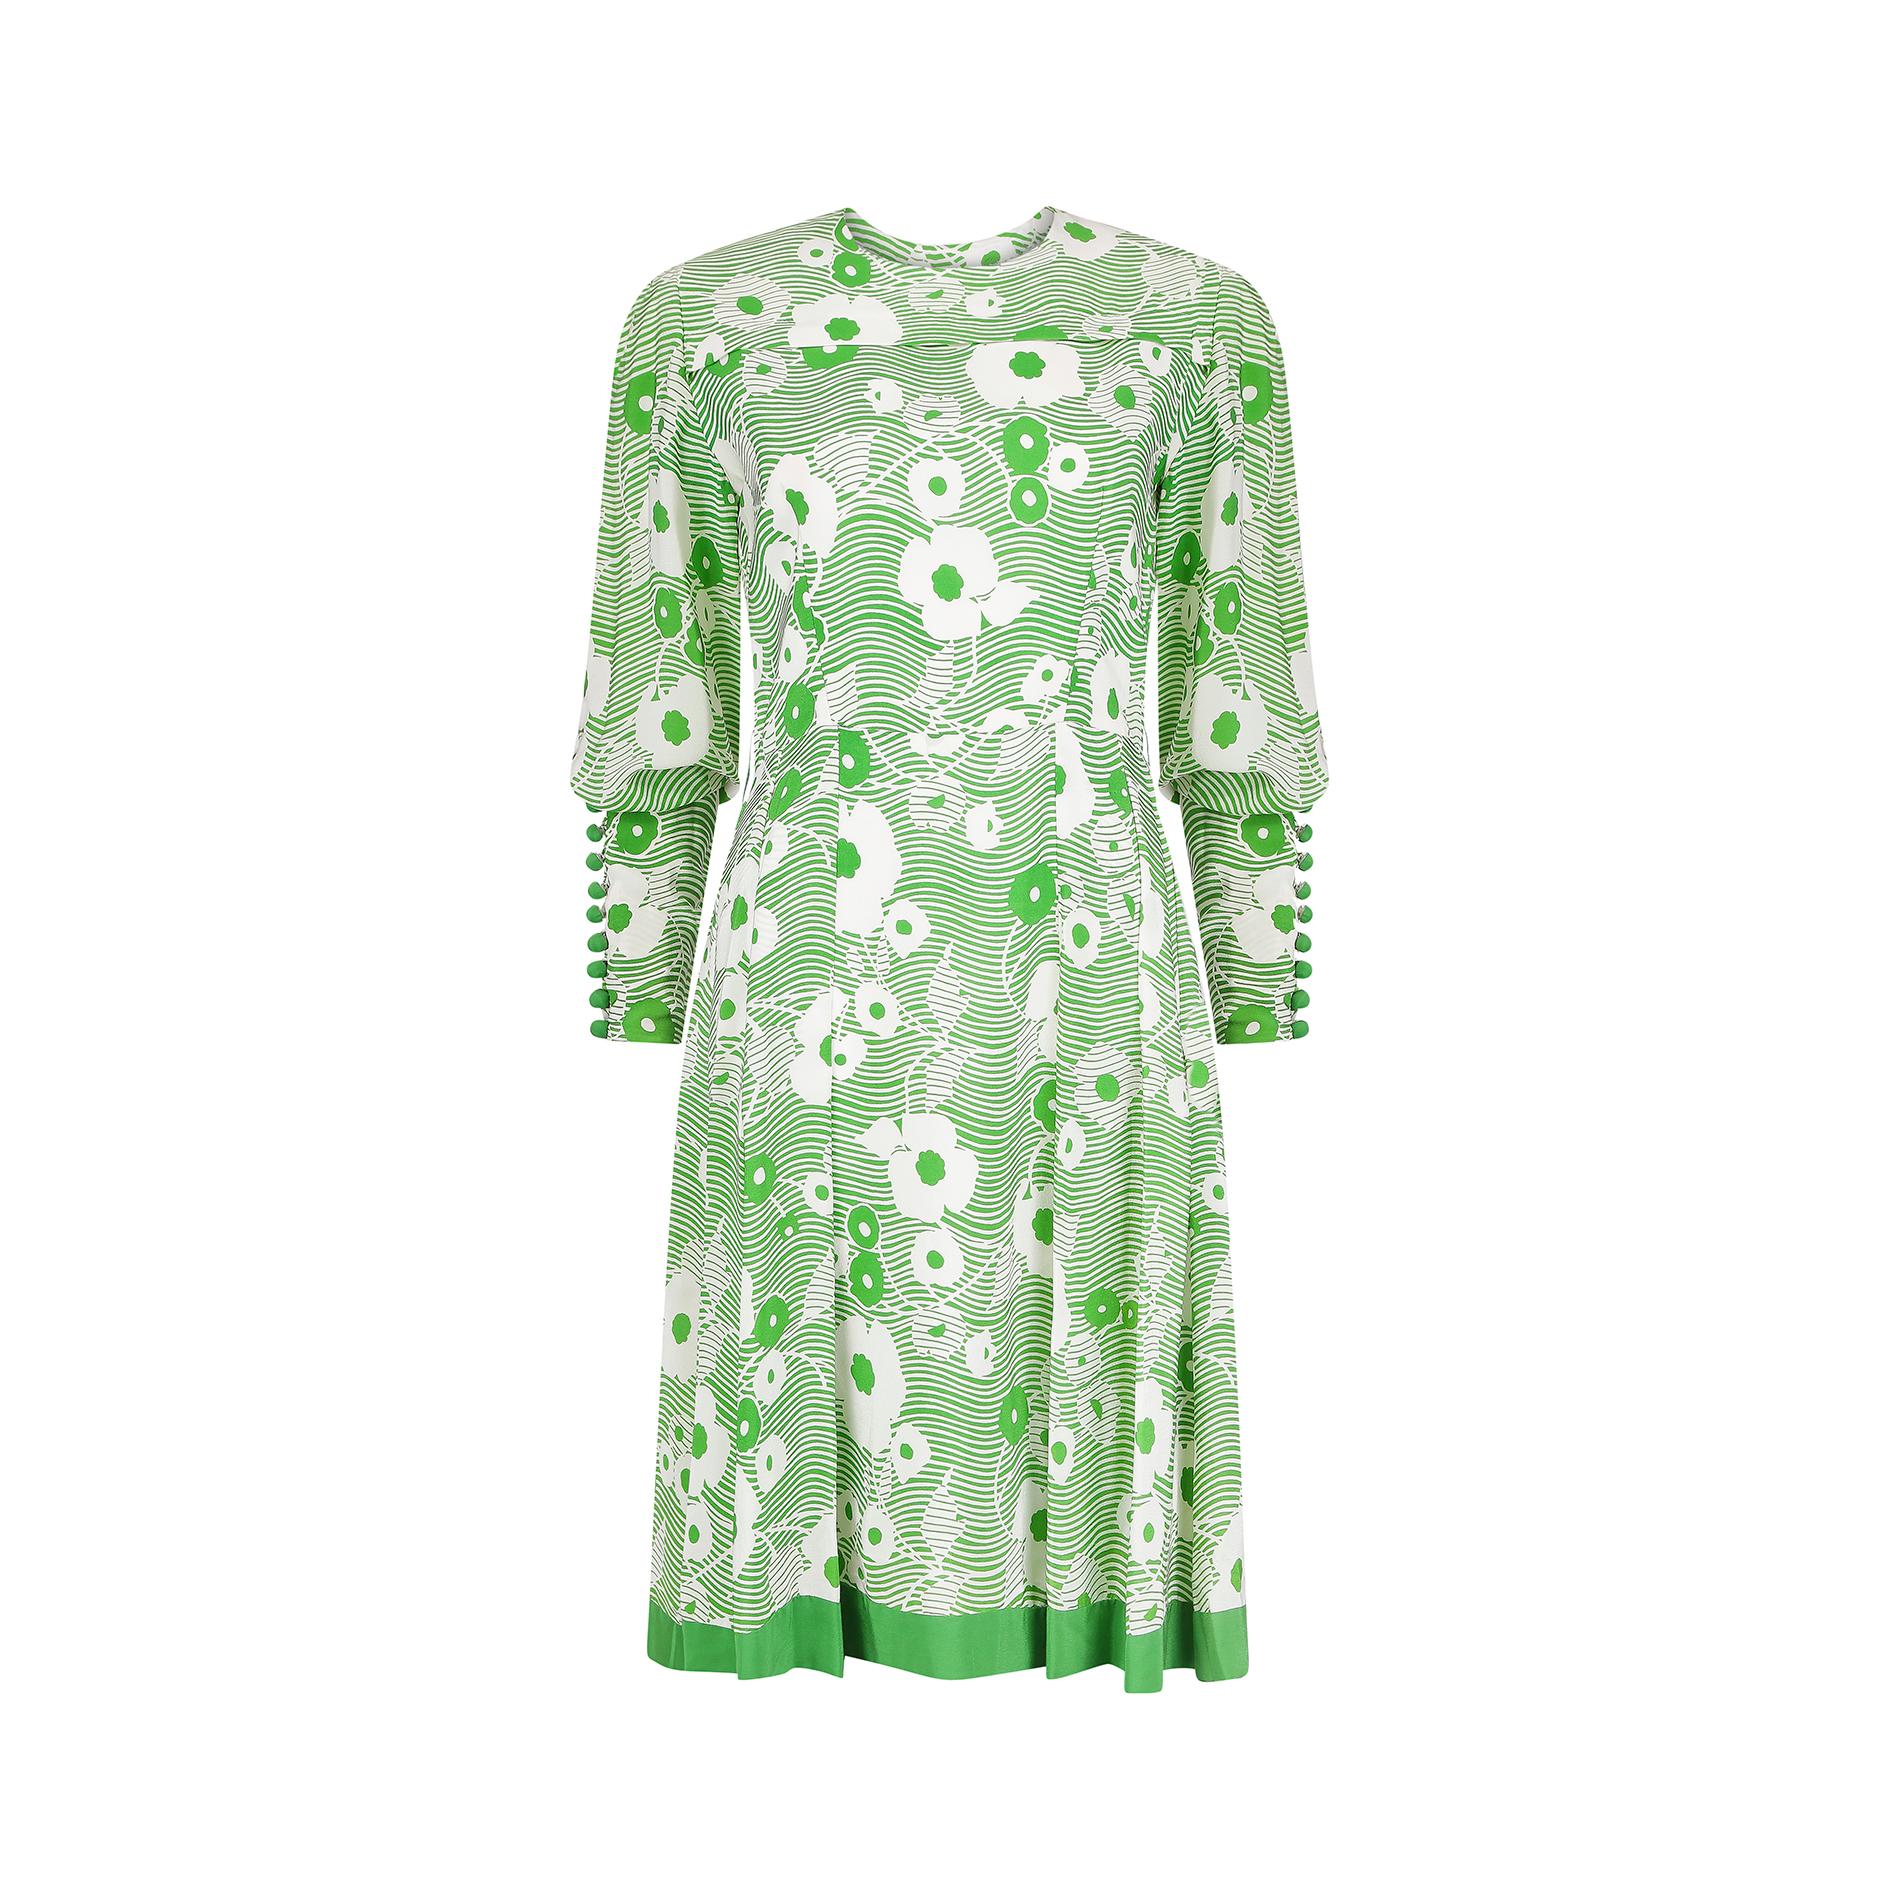 Cette robe de couture française des années 1970, verte et blanche, en crêpe de soie, présente un motif floral saisissant. Le Whiting présente une encolure légèrement arrondie et se ferme dans le dos à l'aide d'une fermeture éclair couture blanche